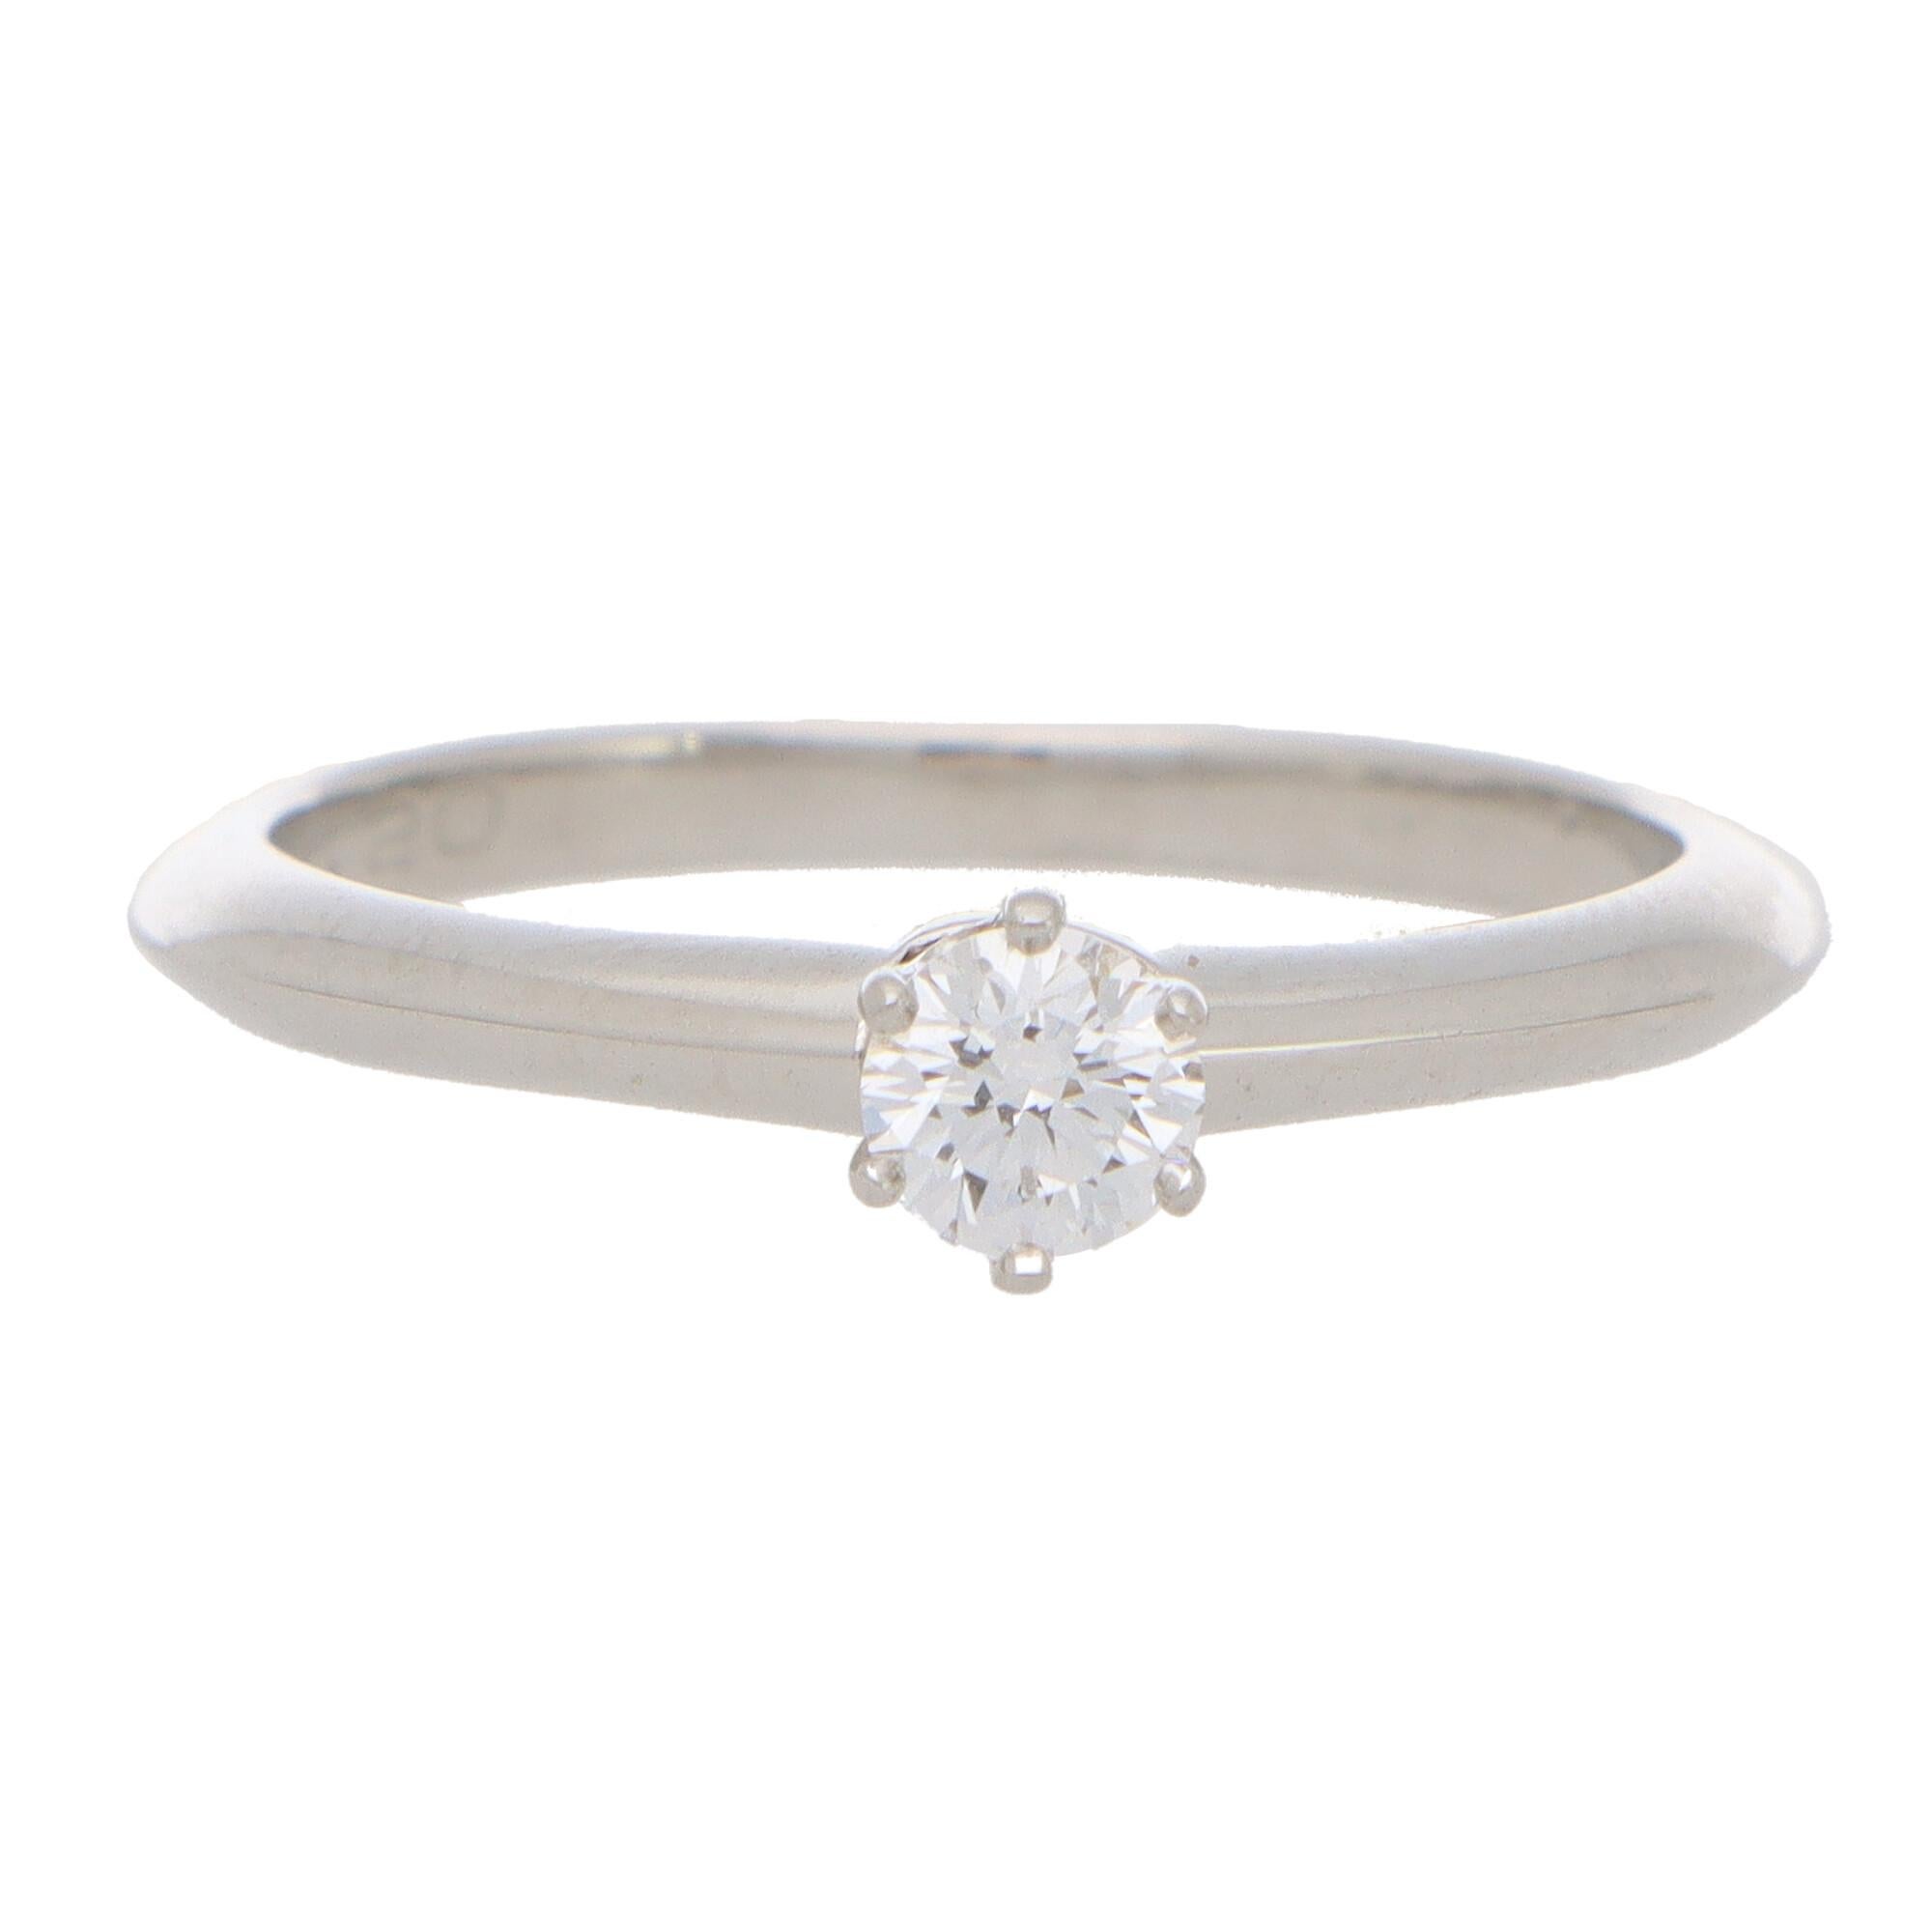 Eine schöne Vintage Tiffany & Co. runden Brillantschliff Diamanten einzigen Solitär-Ring, in Platin gefasst.

Das Stück ist ausschließlich mit einem schönen 0,20 Karat runden Diamanten im Brillantschliff besetzt, der mit sechs Krallen in eine